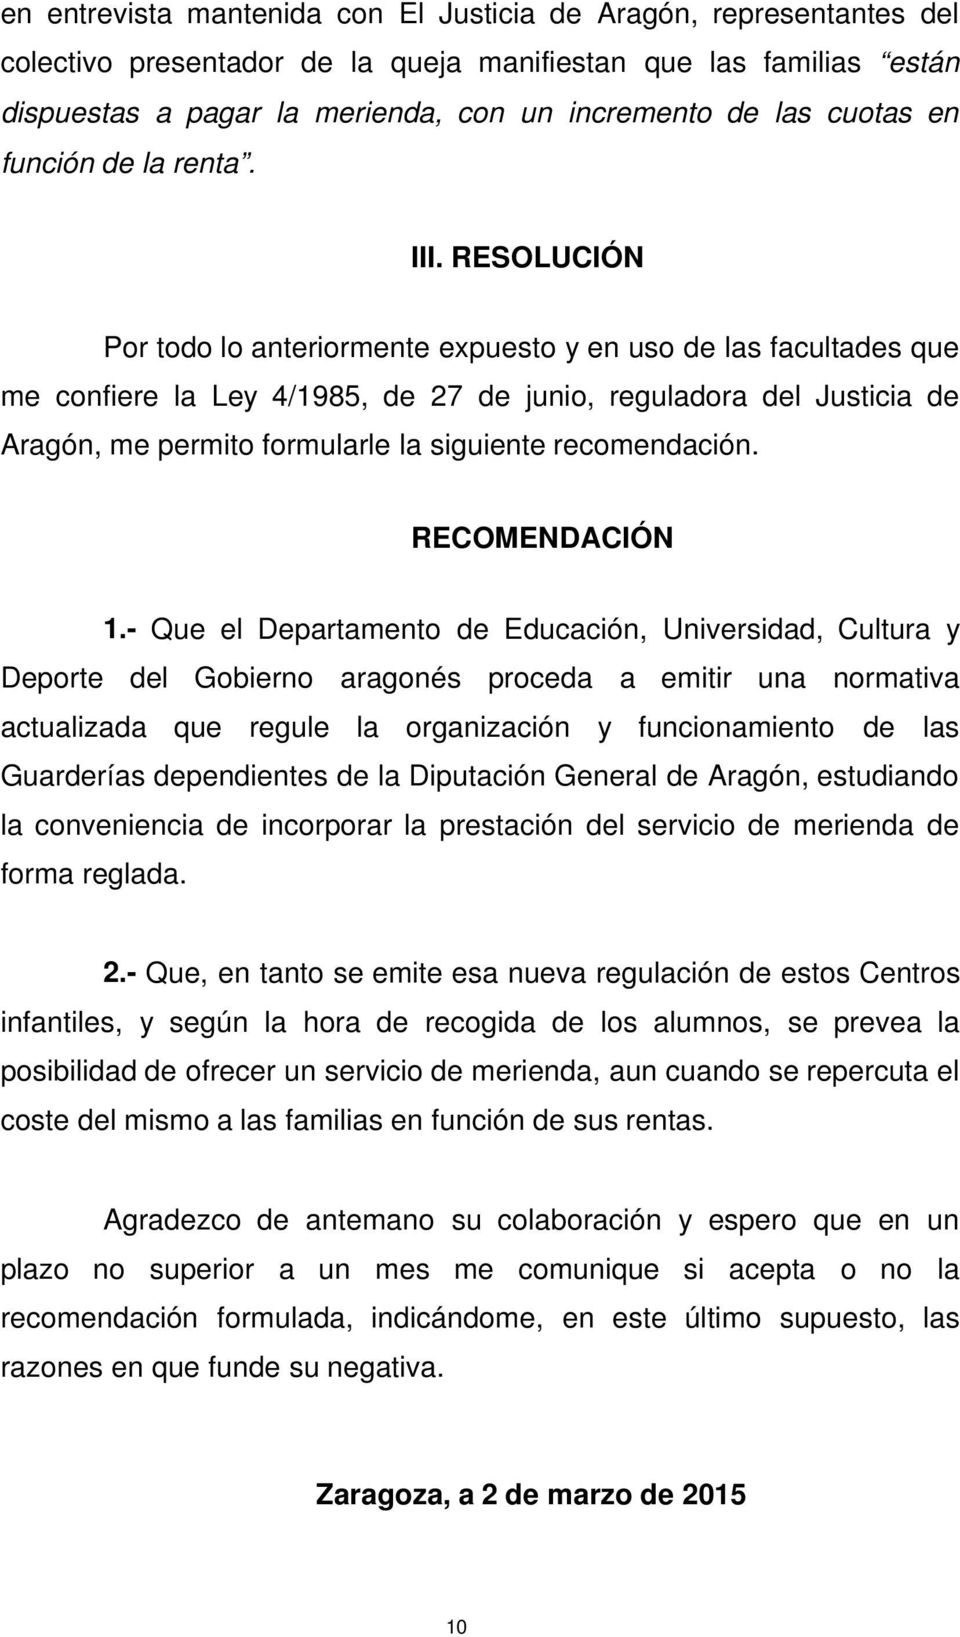 RESOLUCIÓN Por todo lo anteriormente expuesto y en uso de las facultades que me confiere la Ley 4/1985, de 27 de junio, reguladora del Justicia de Aragón, me permito formularle la siguiente